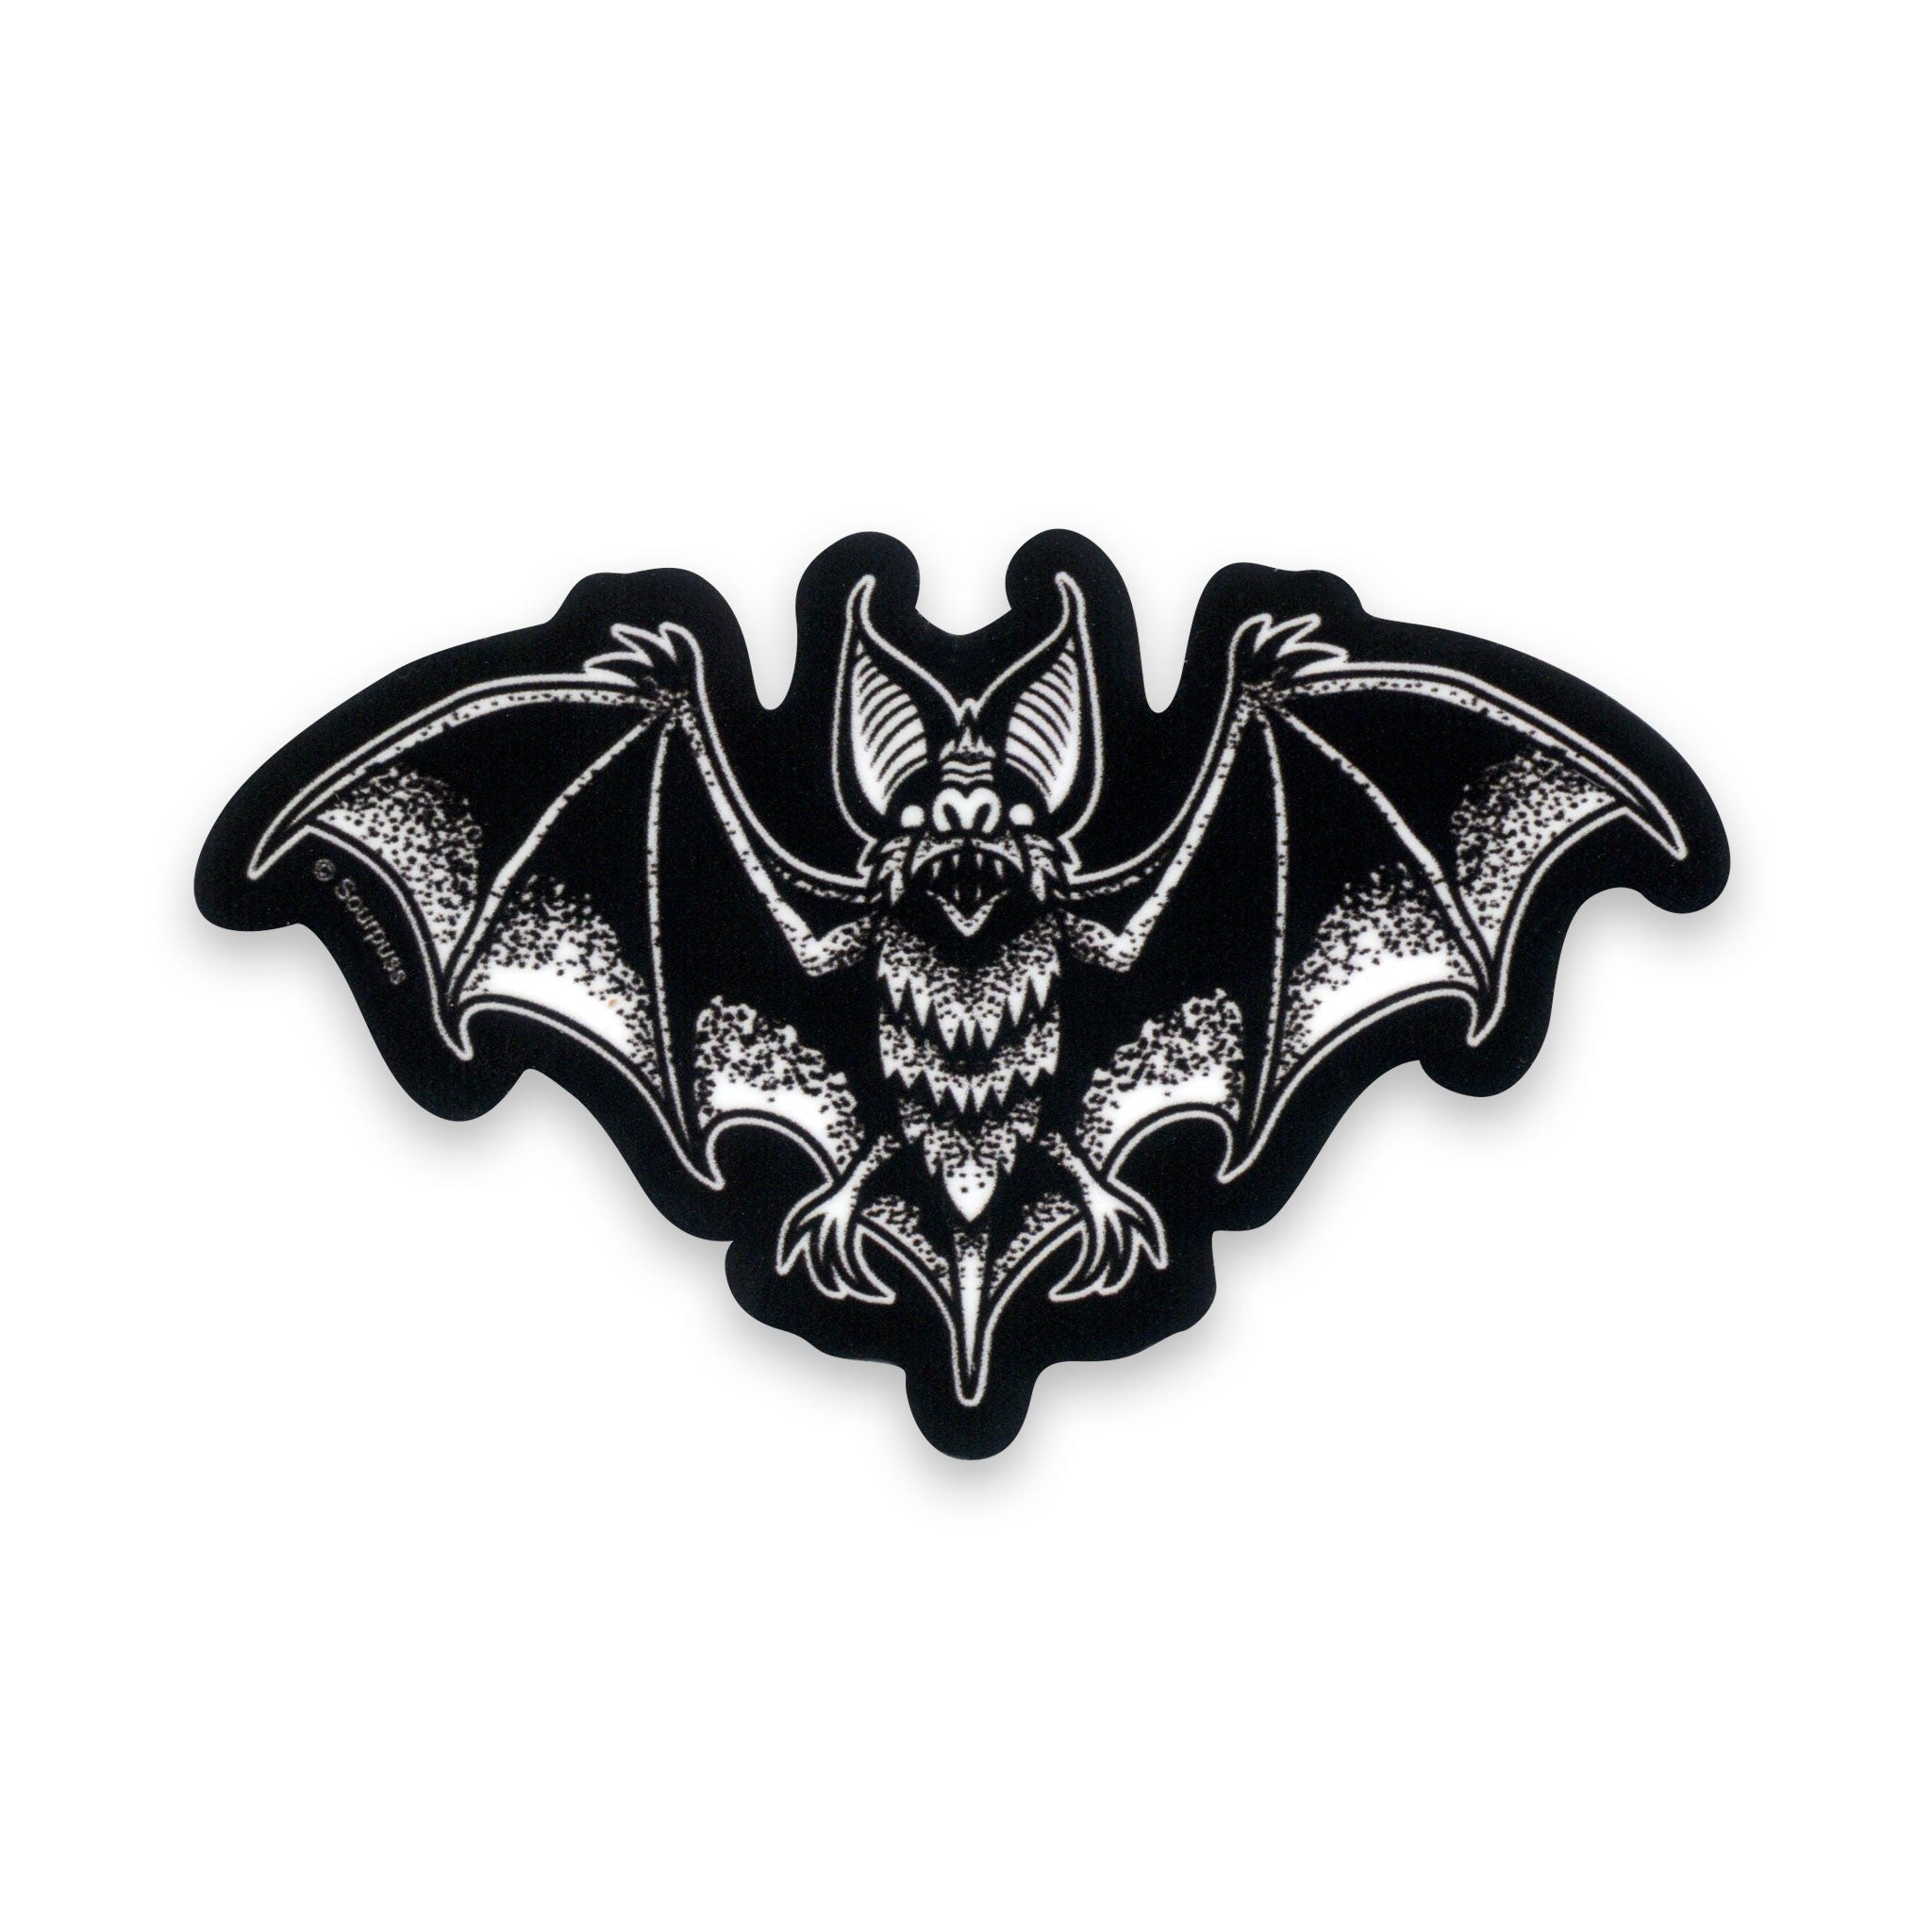 3" x 1 1/2" die-cut vinyl black and white Batt Attack bat sticker